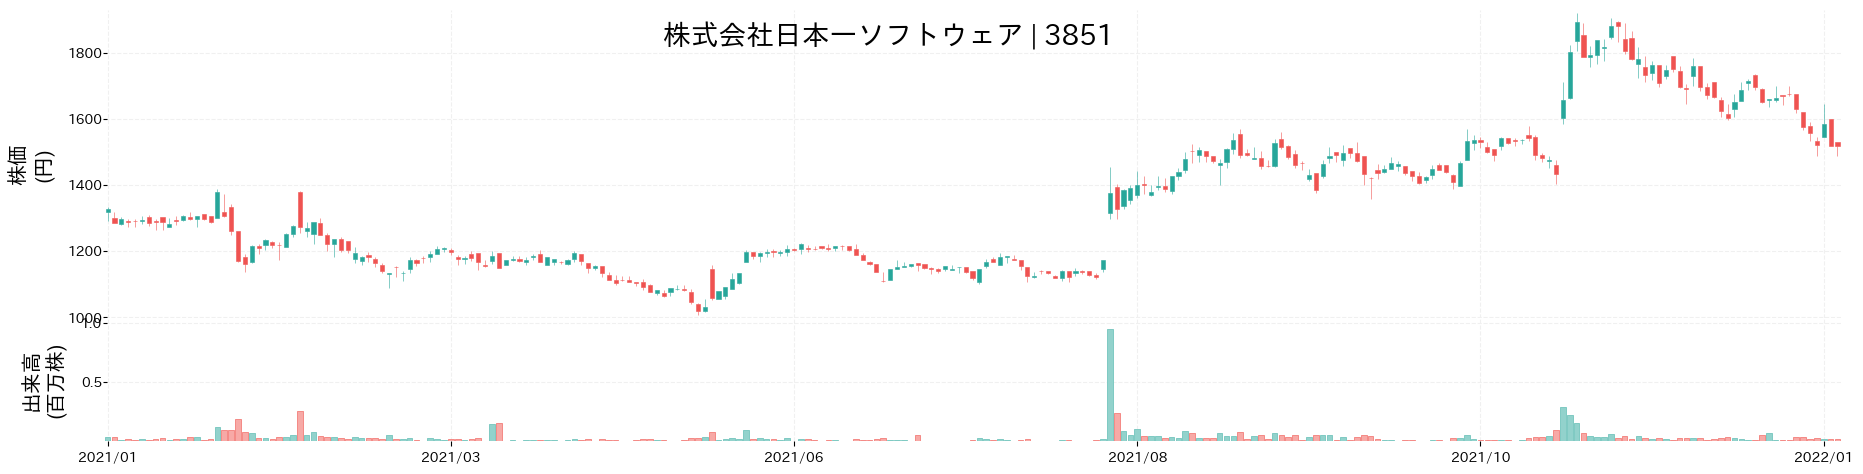 日本一ソフトウェアの株価推移(2021)